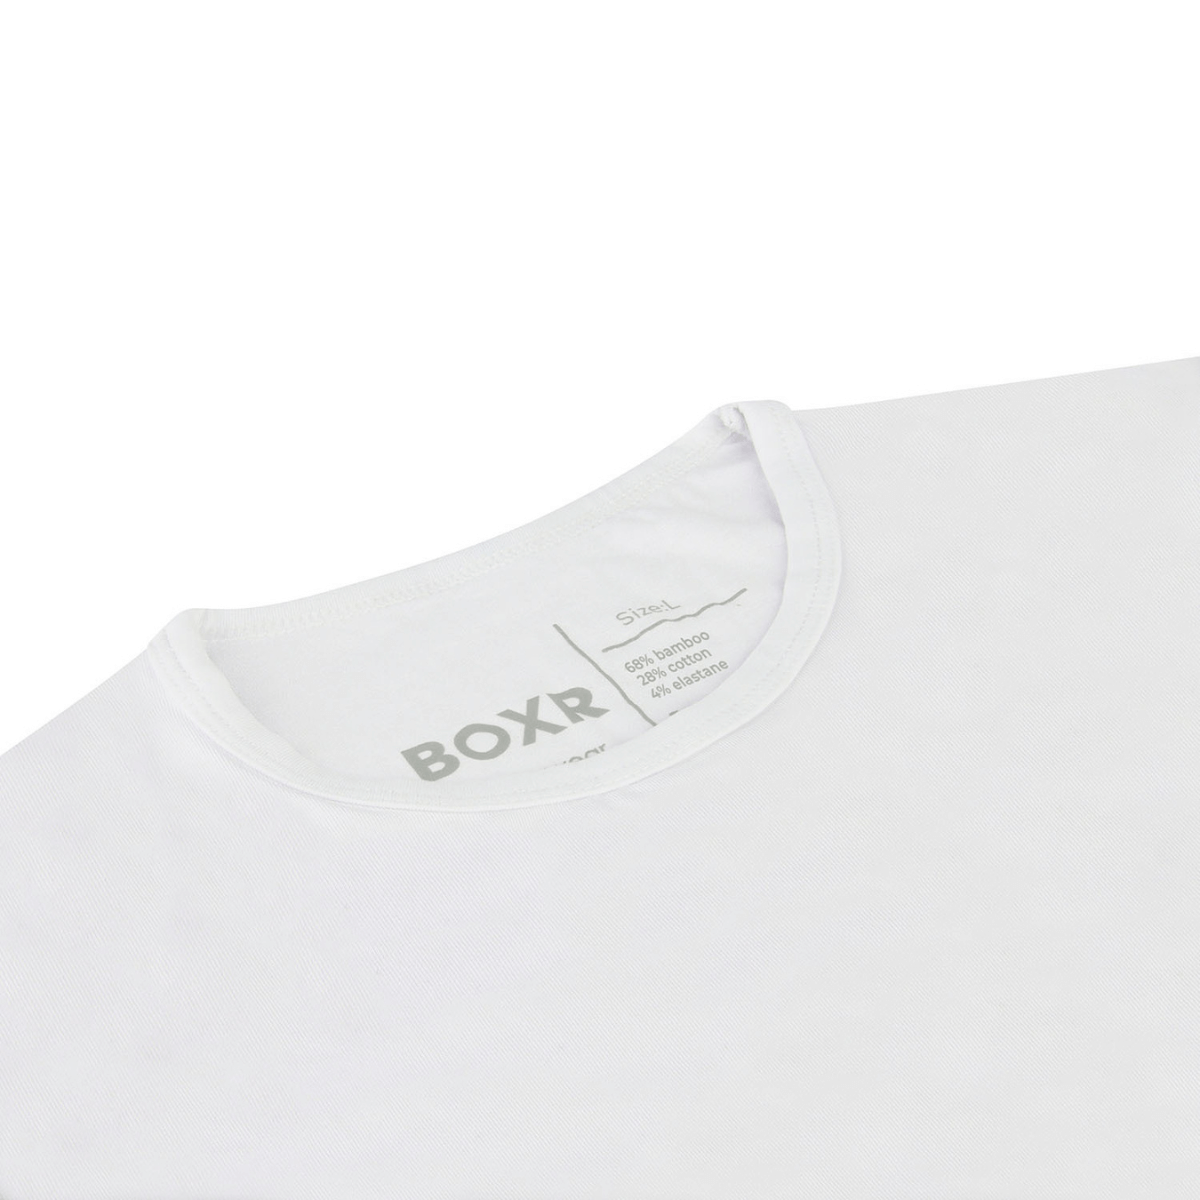 BOXR | T-shirt à manches longues en bambou - Lot de 4 - Blanc